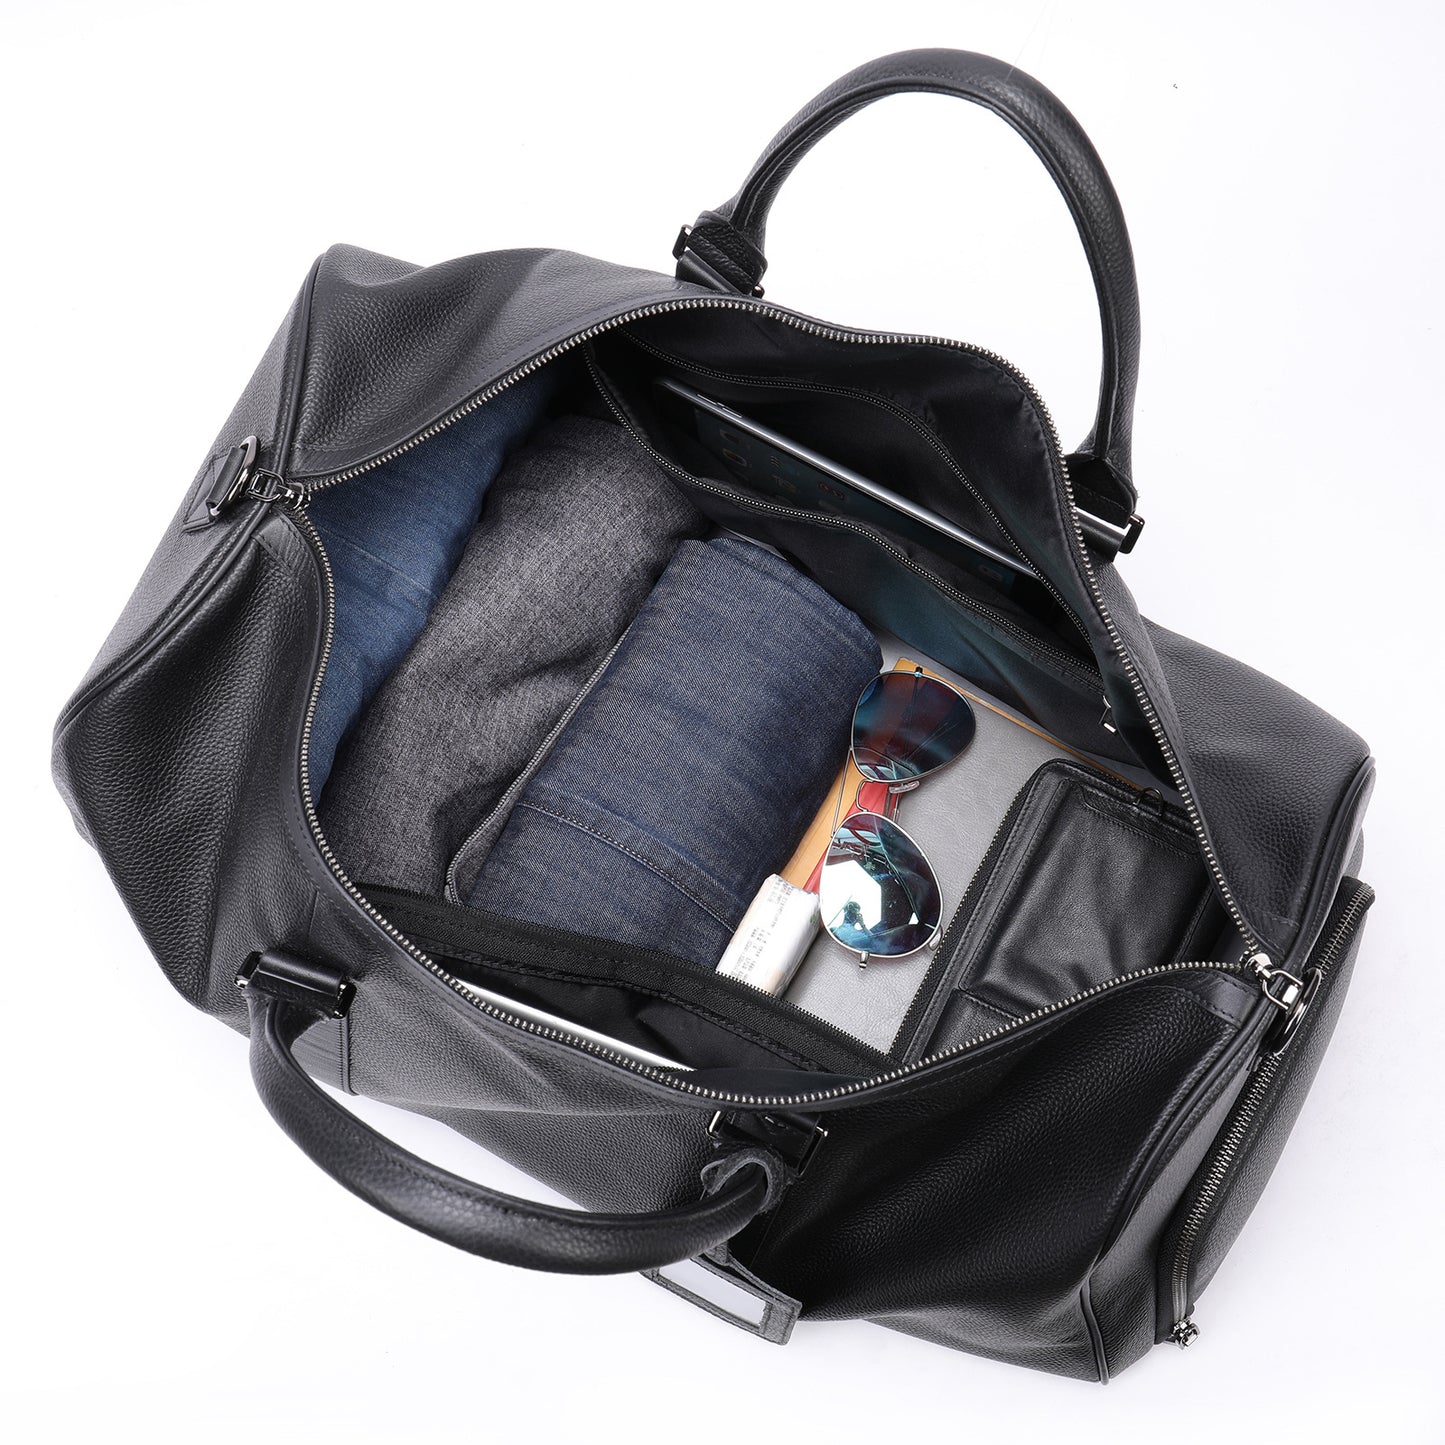 Men's Excursion Bag Large Capacity Portable